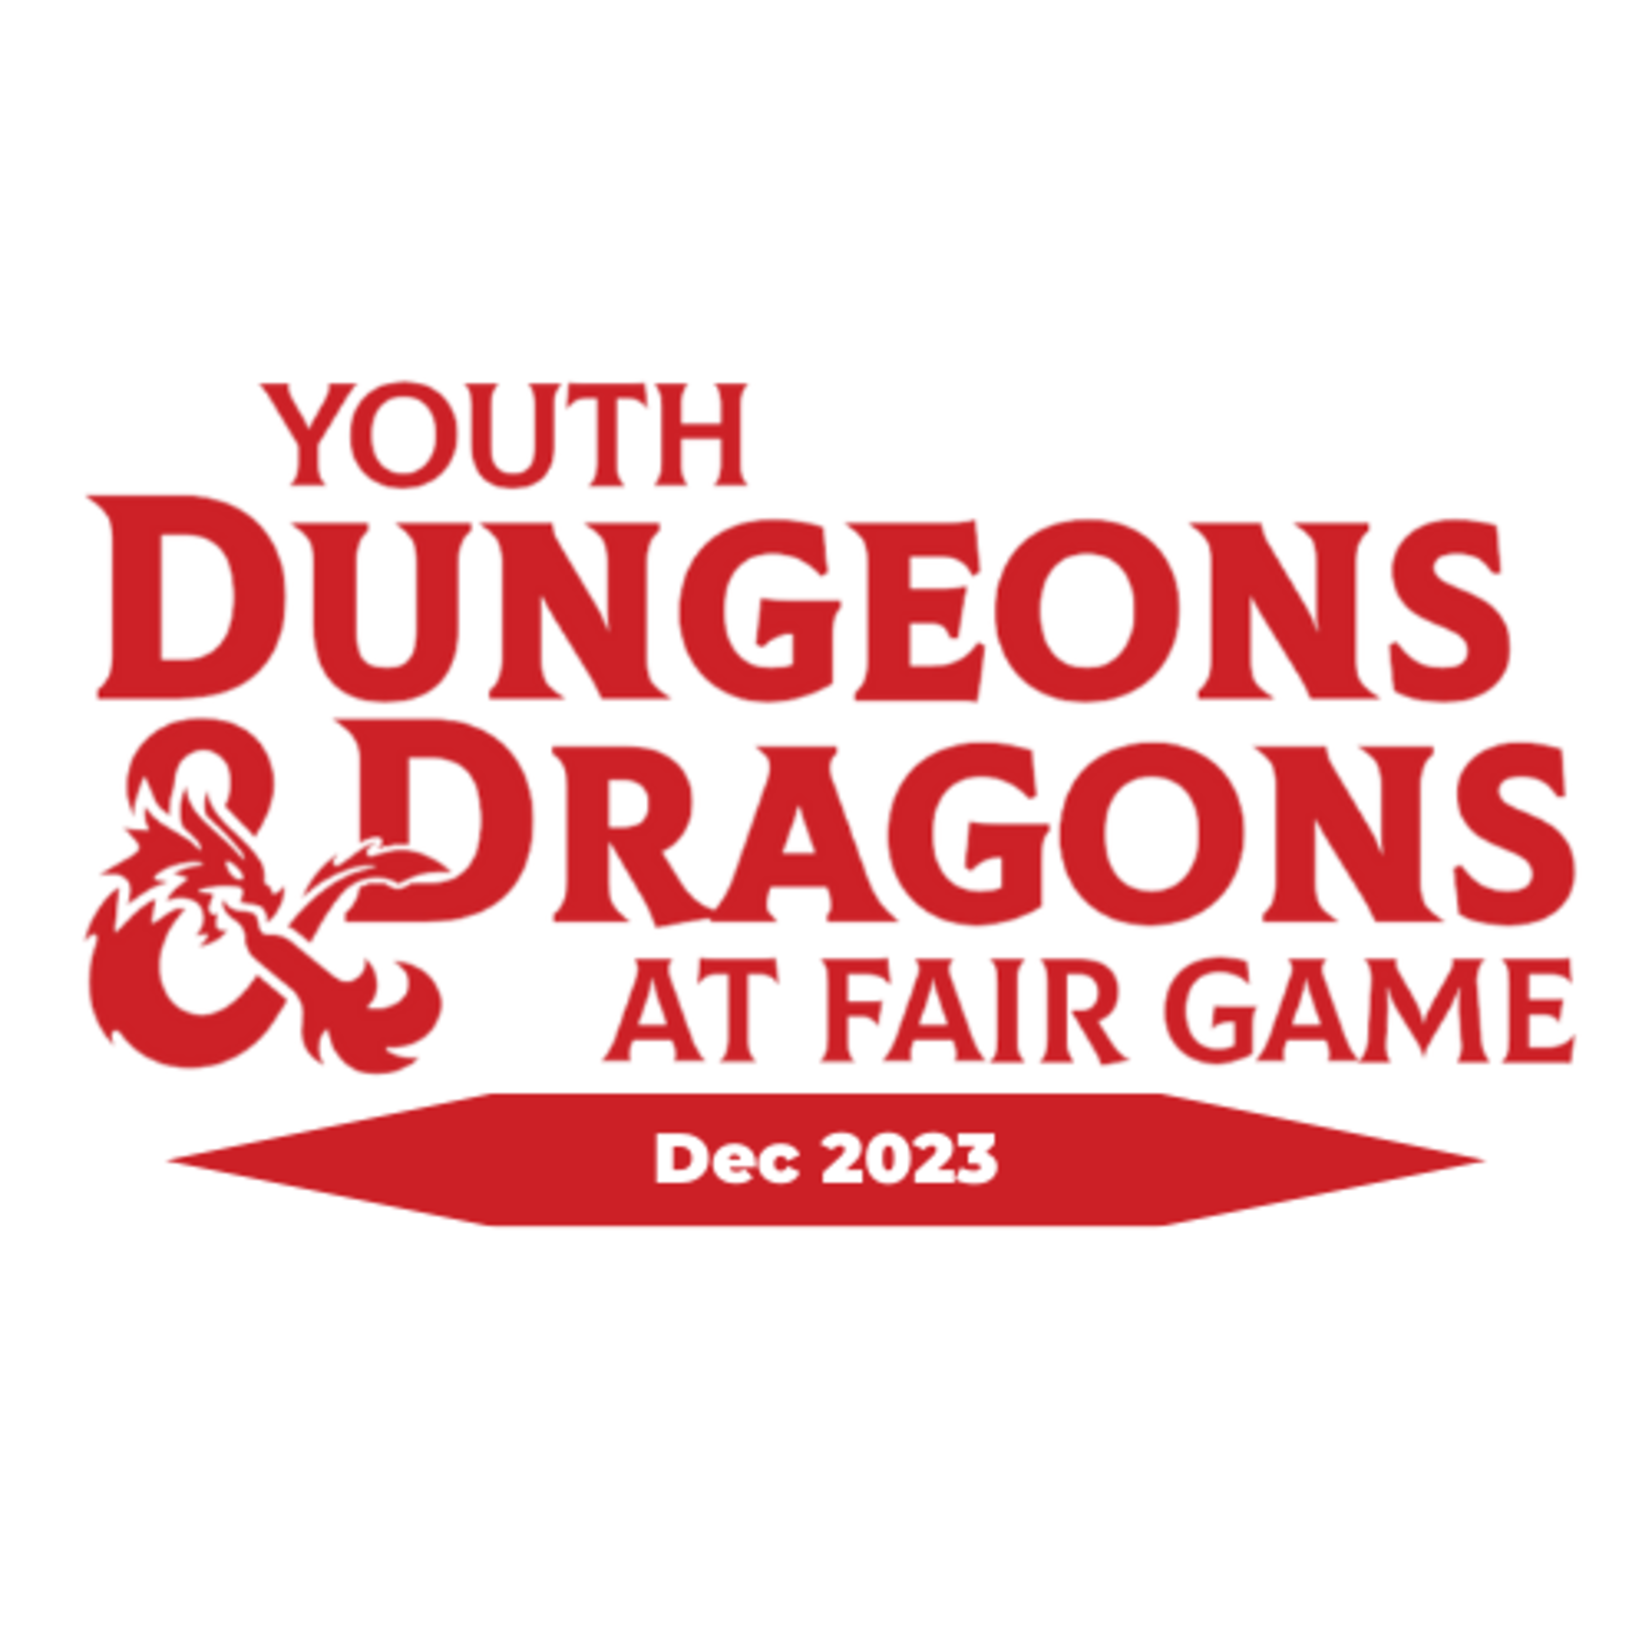 Fair Game YDND Dec 2023: Saturday - Group LS2 La Grange 1-3 PM CST (Ages 13-17)